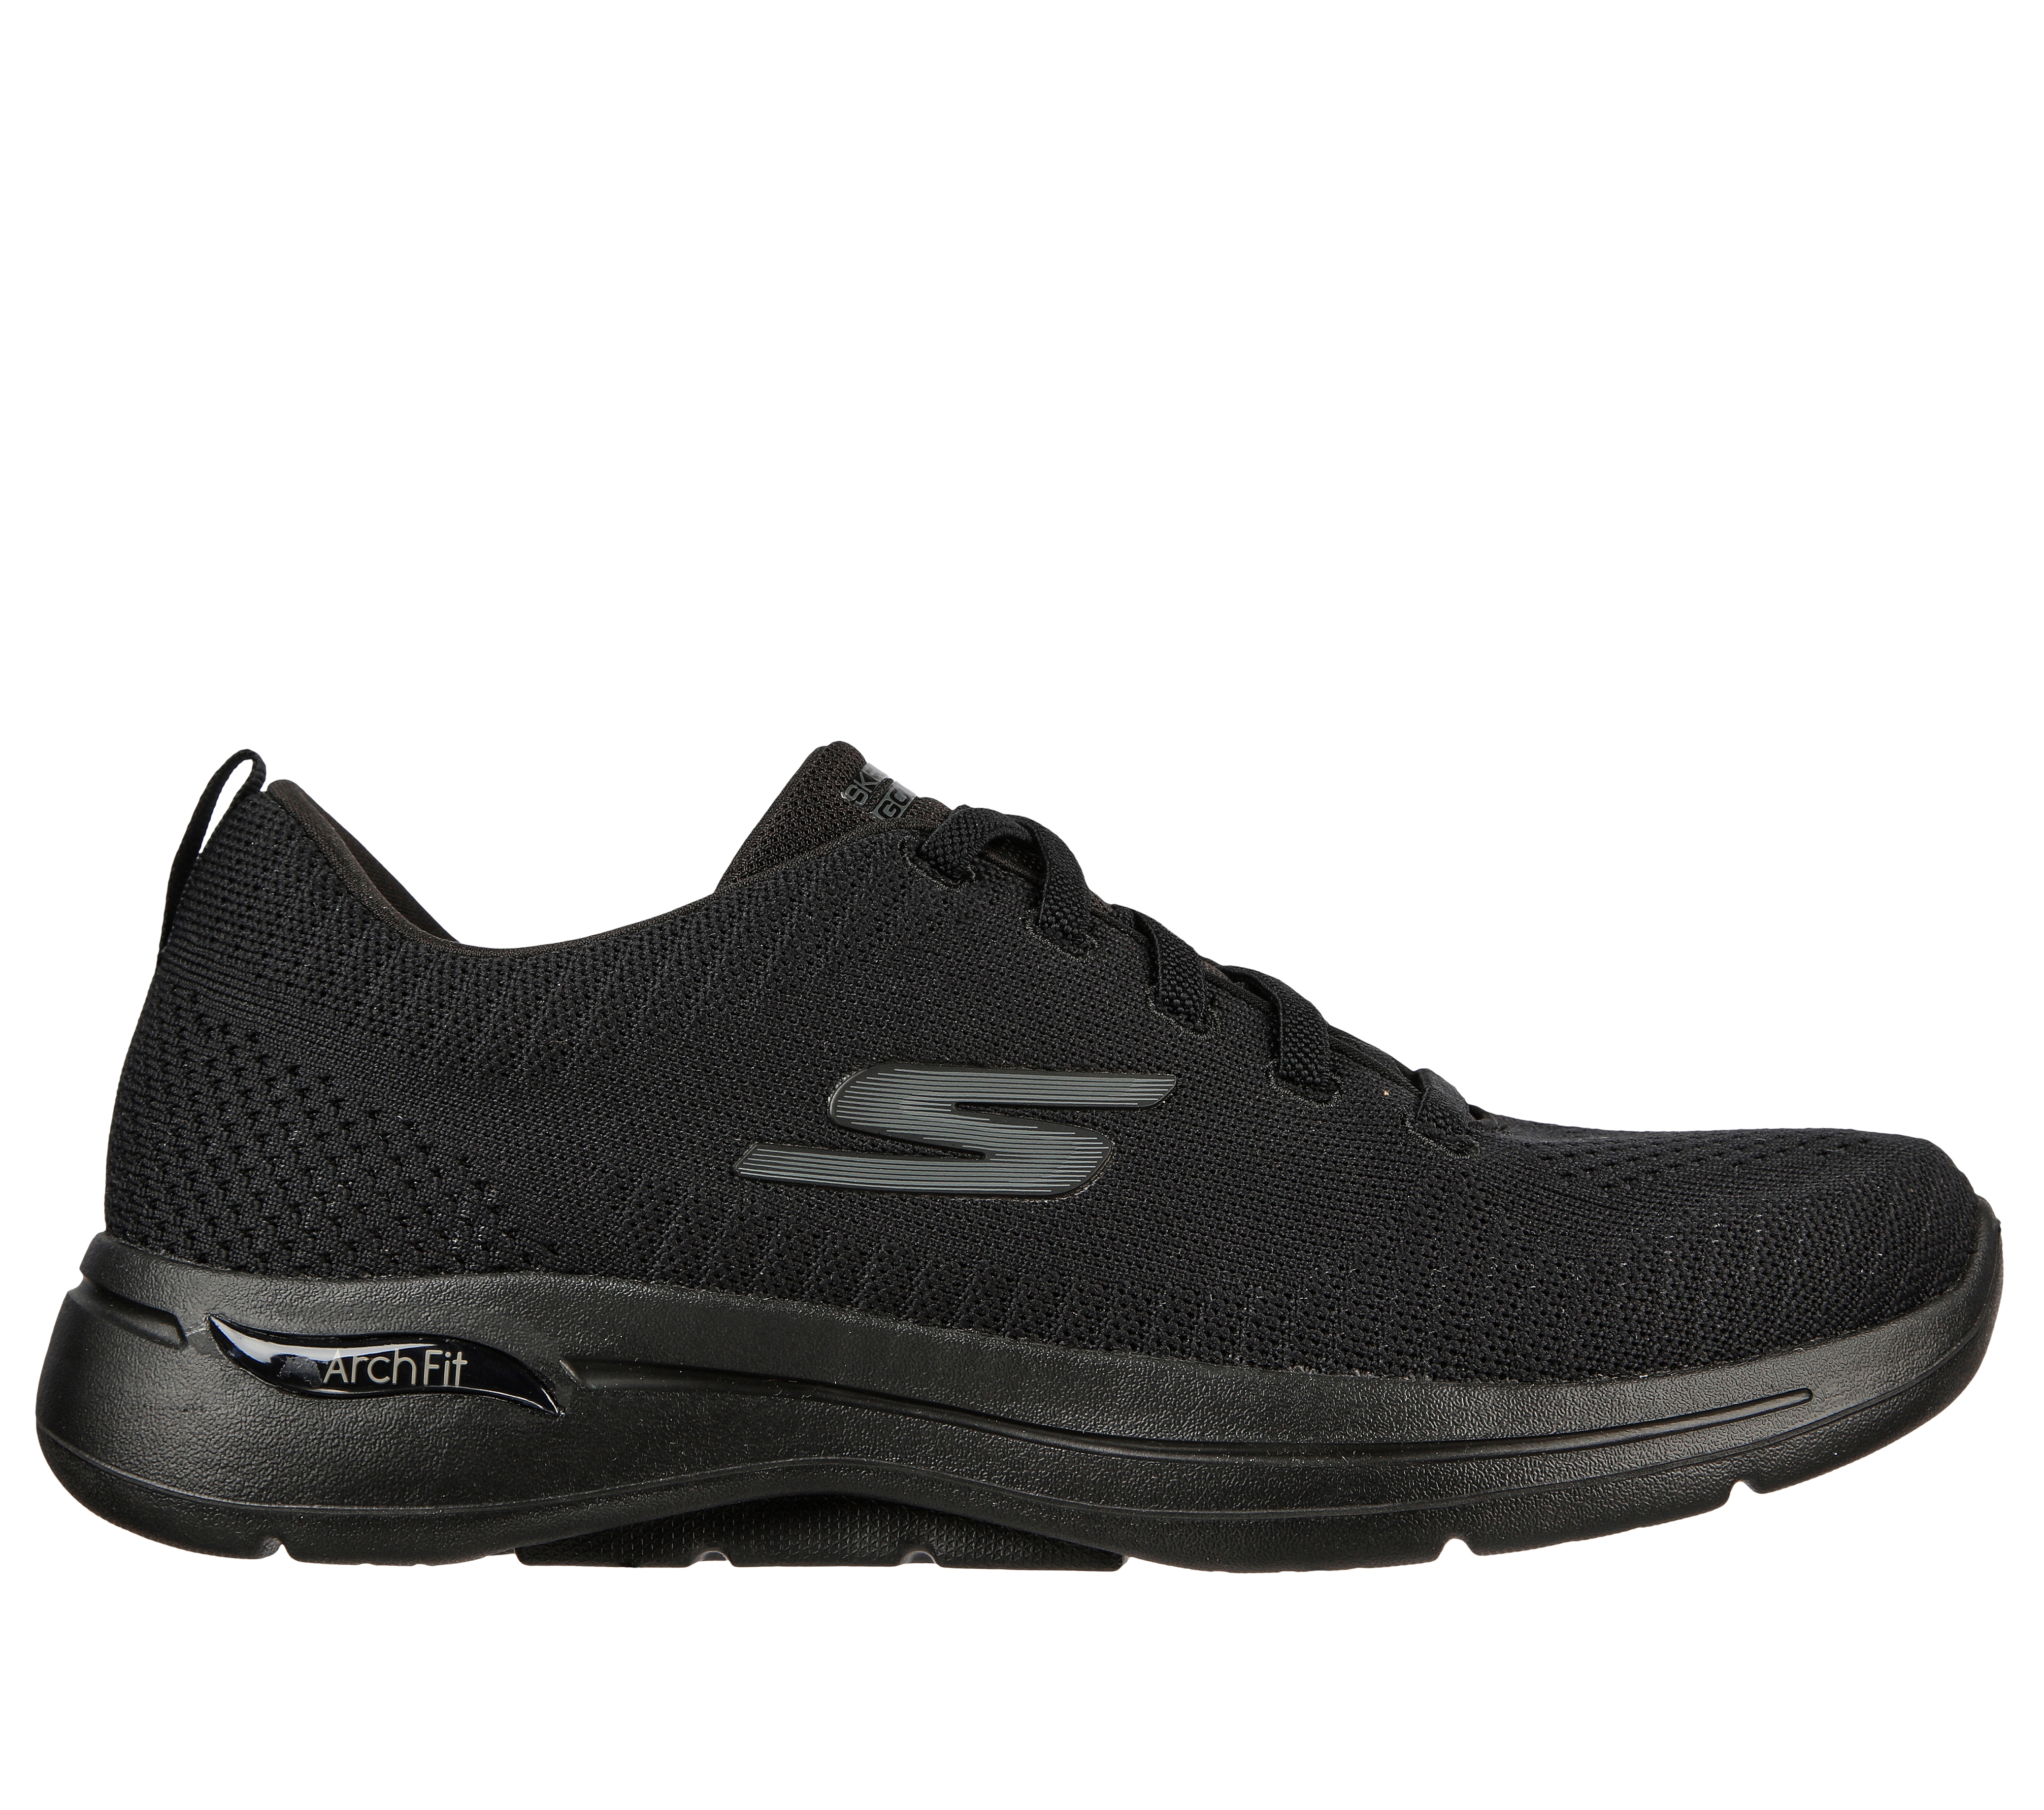 Are Skechers Go Walk Shoes Machine Washable?